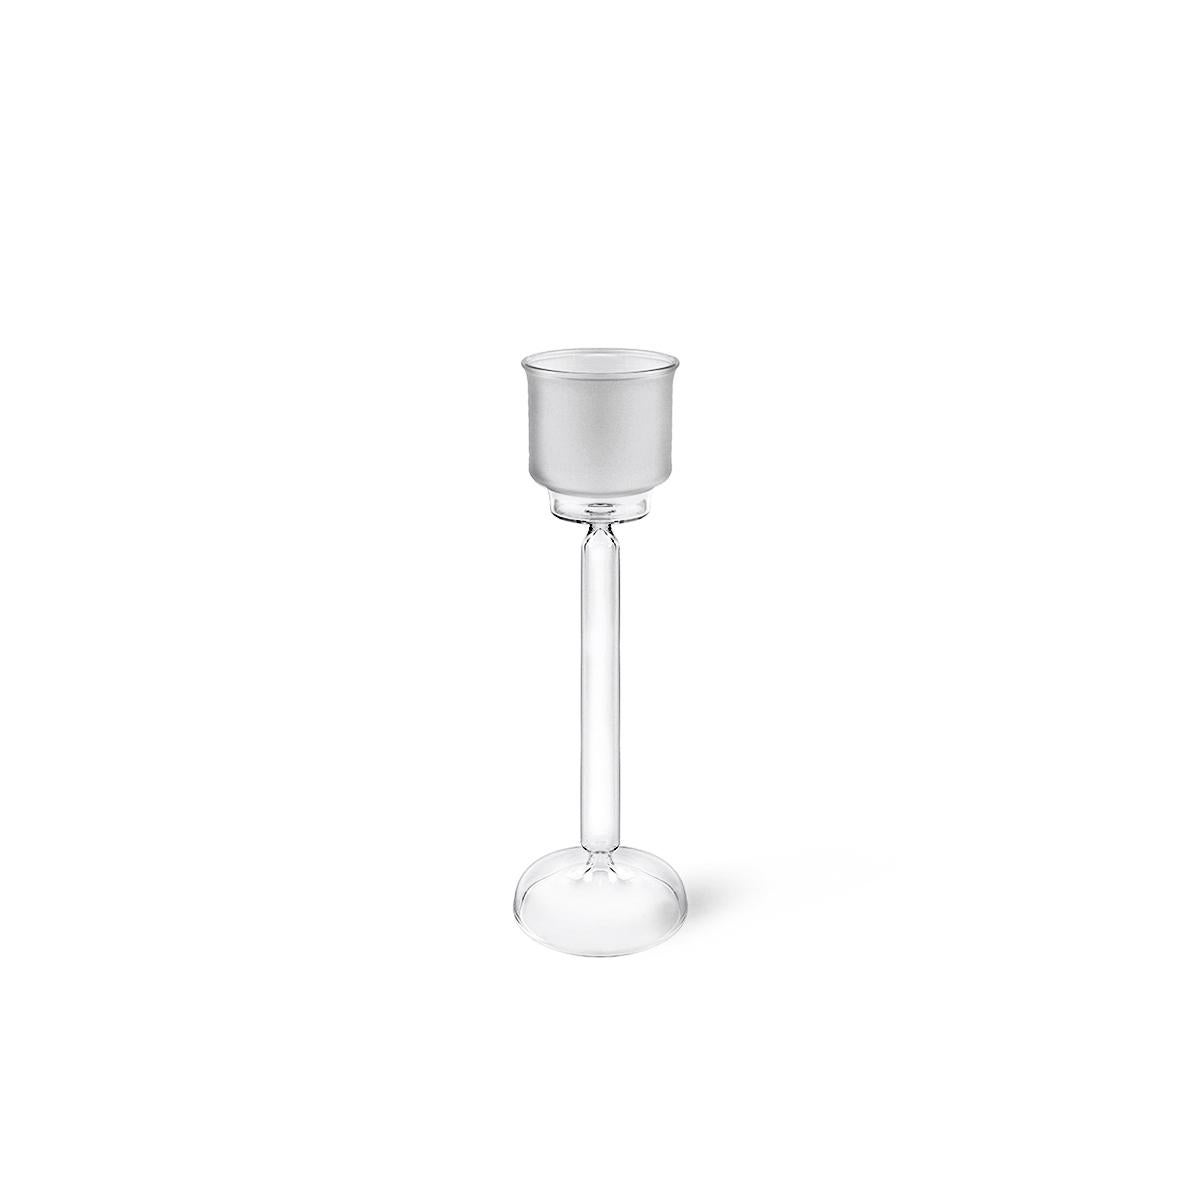 Ambra, entworfen von Aldo Cibic, ist ein mundgeblasener Kerzenhalter, der in drei verschiedenen Größen erhältlich ist. Der transparente, hohle Sockel und der dünne Stiel verleihen dem Objekt Leichtigkeit, während die glasierte Oberseite die Flamme